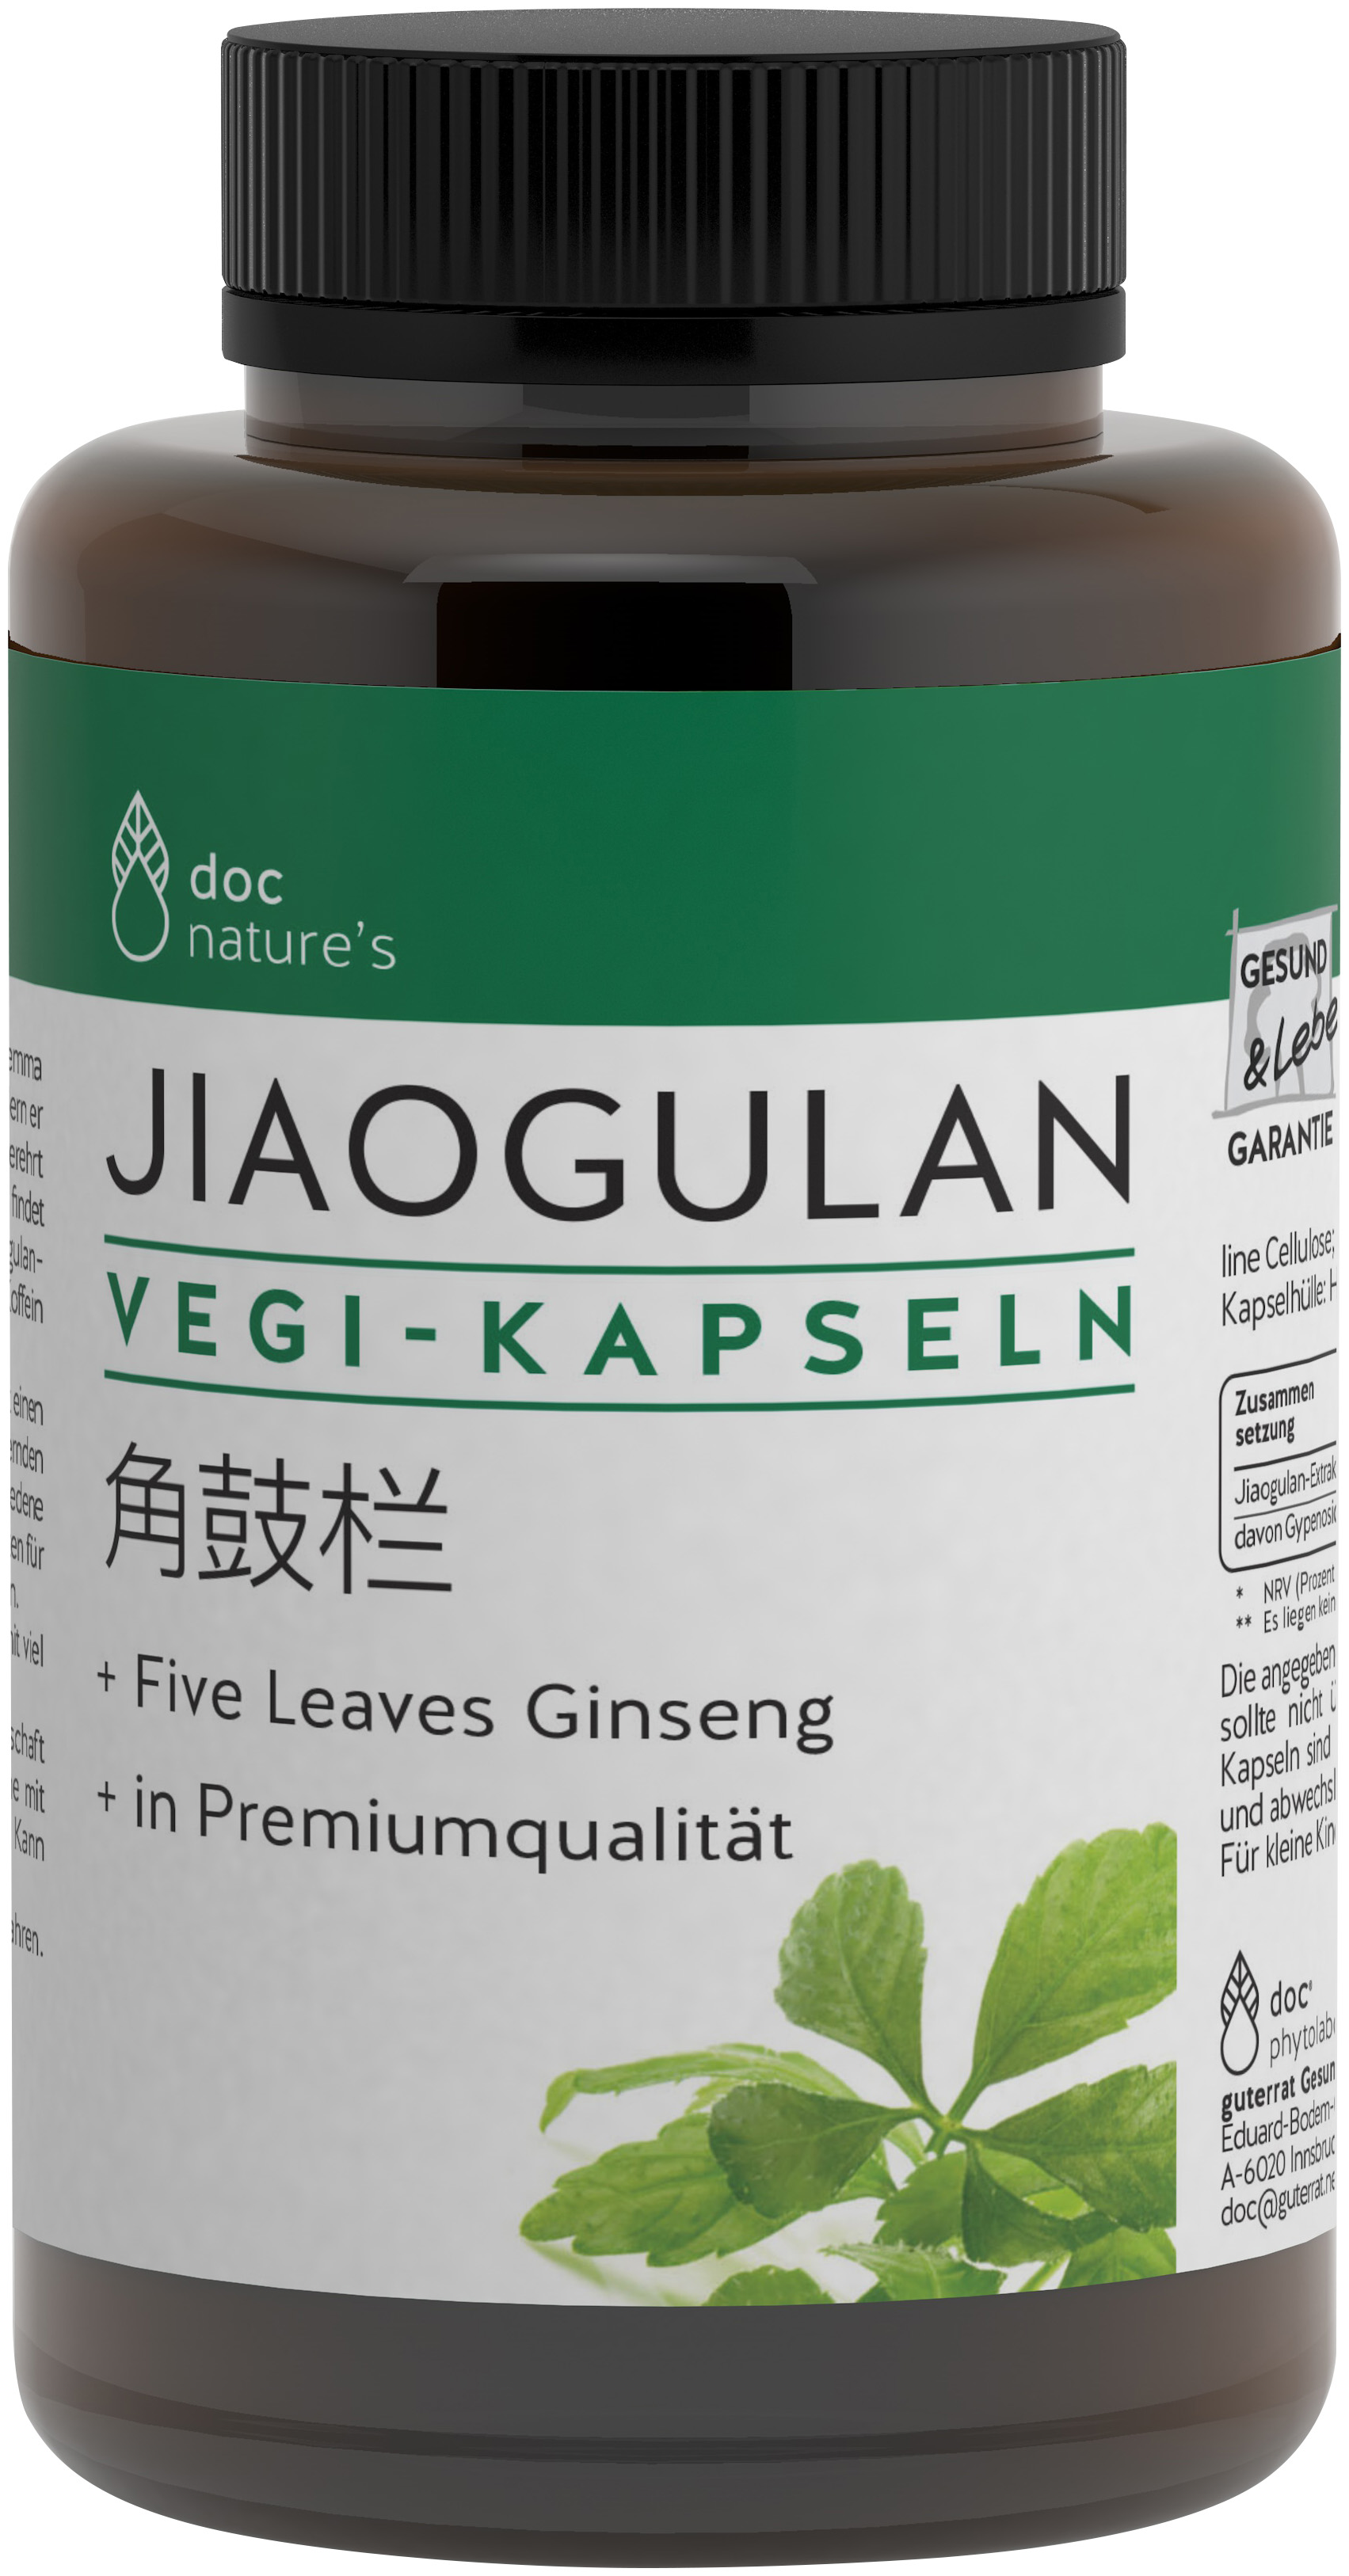 doc nature’s Jiaogulan Vegi-Kapseln